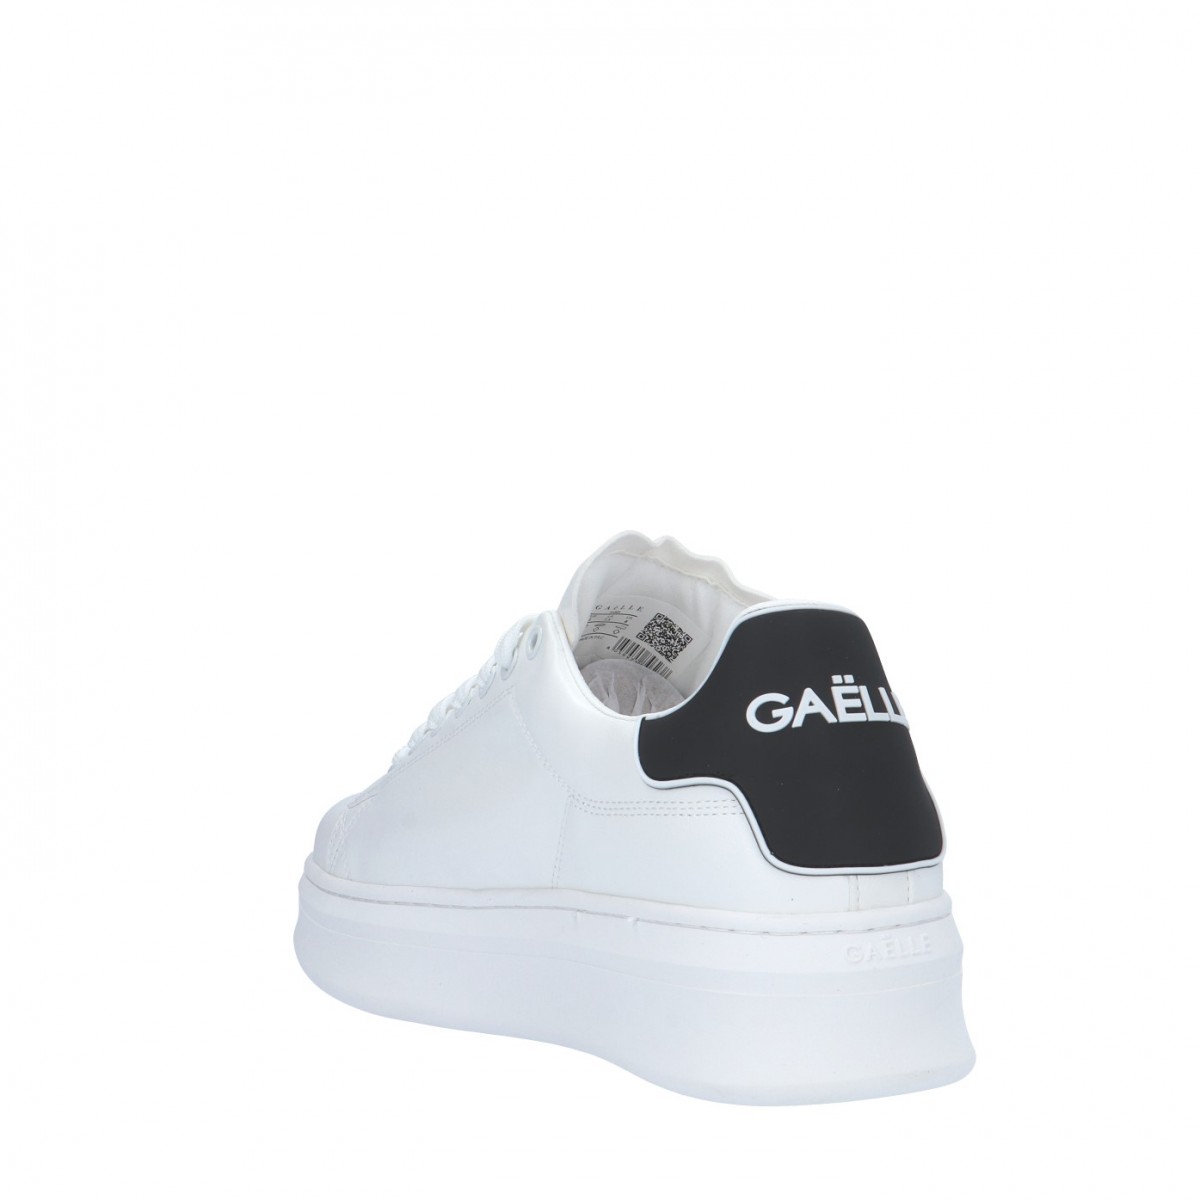 Gaelle Sneaker Bianco/nero Gomma GBCUP700